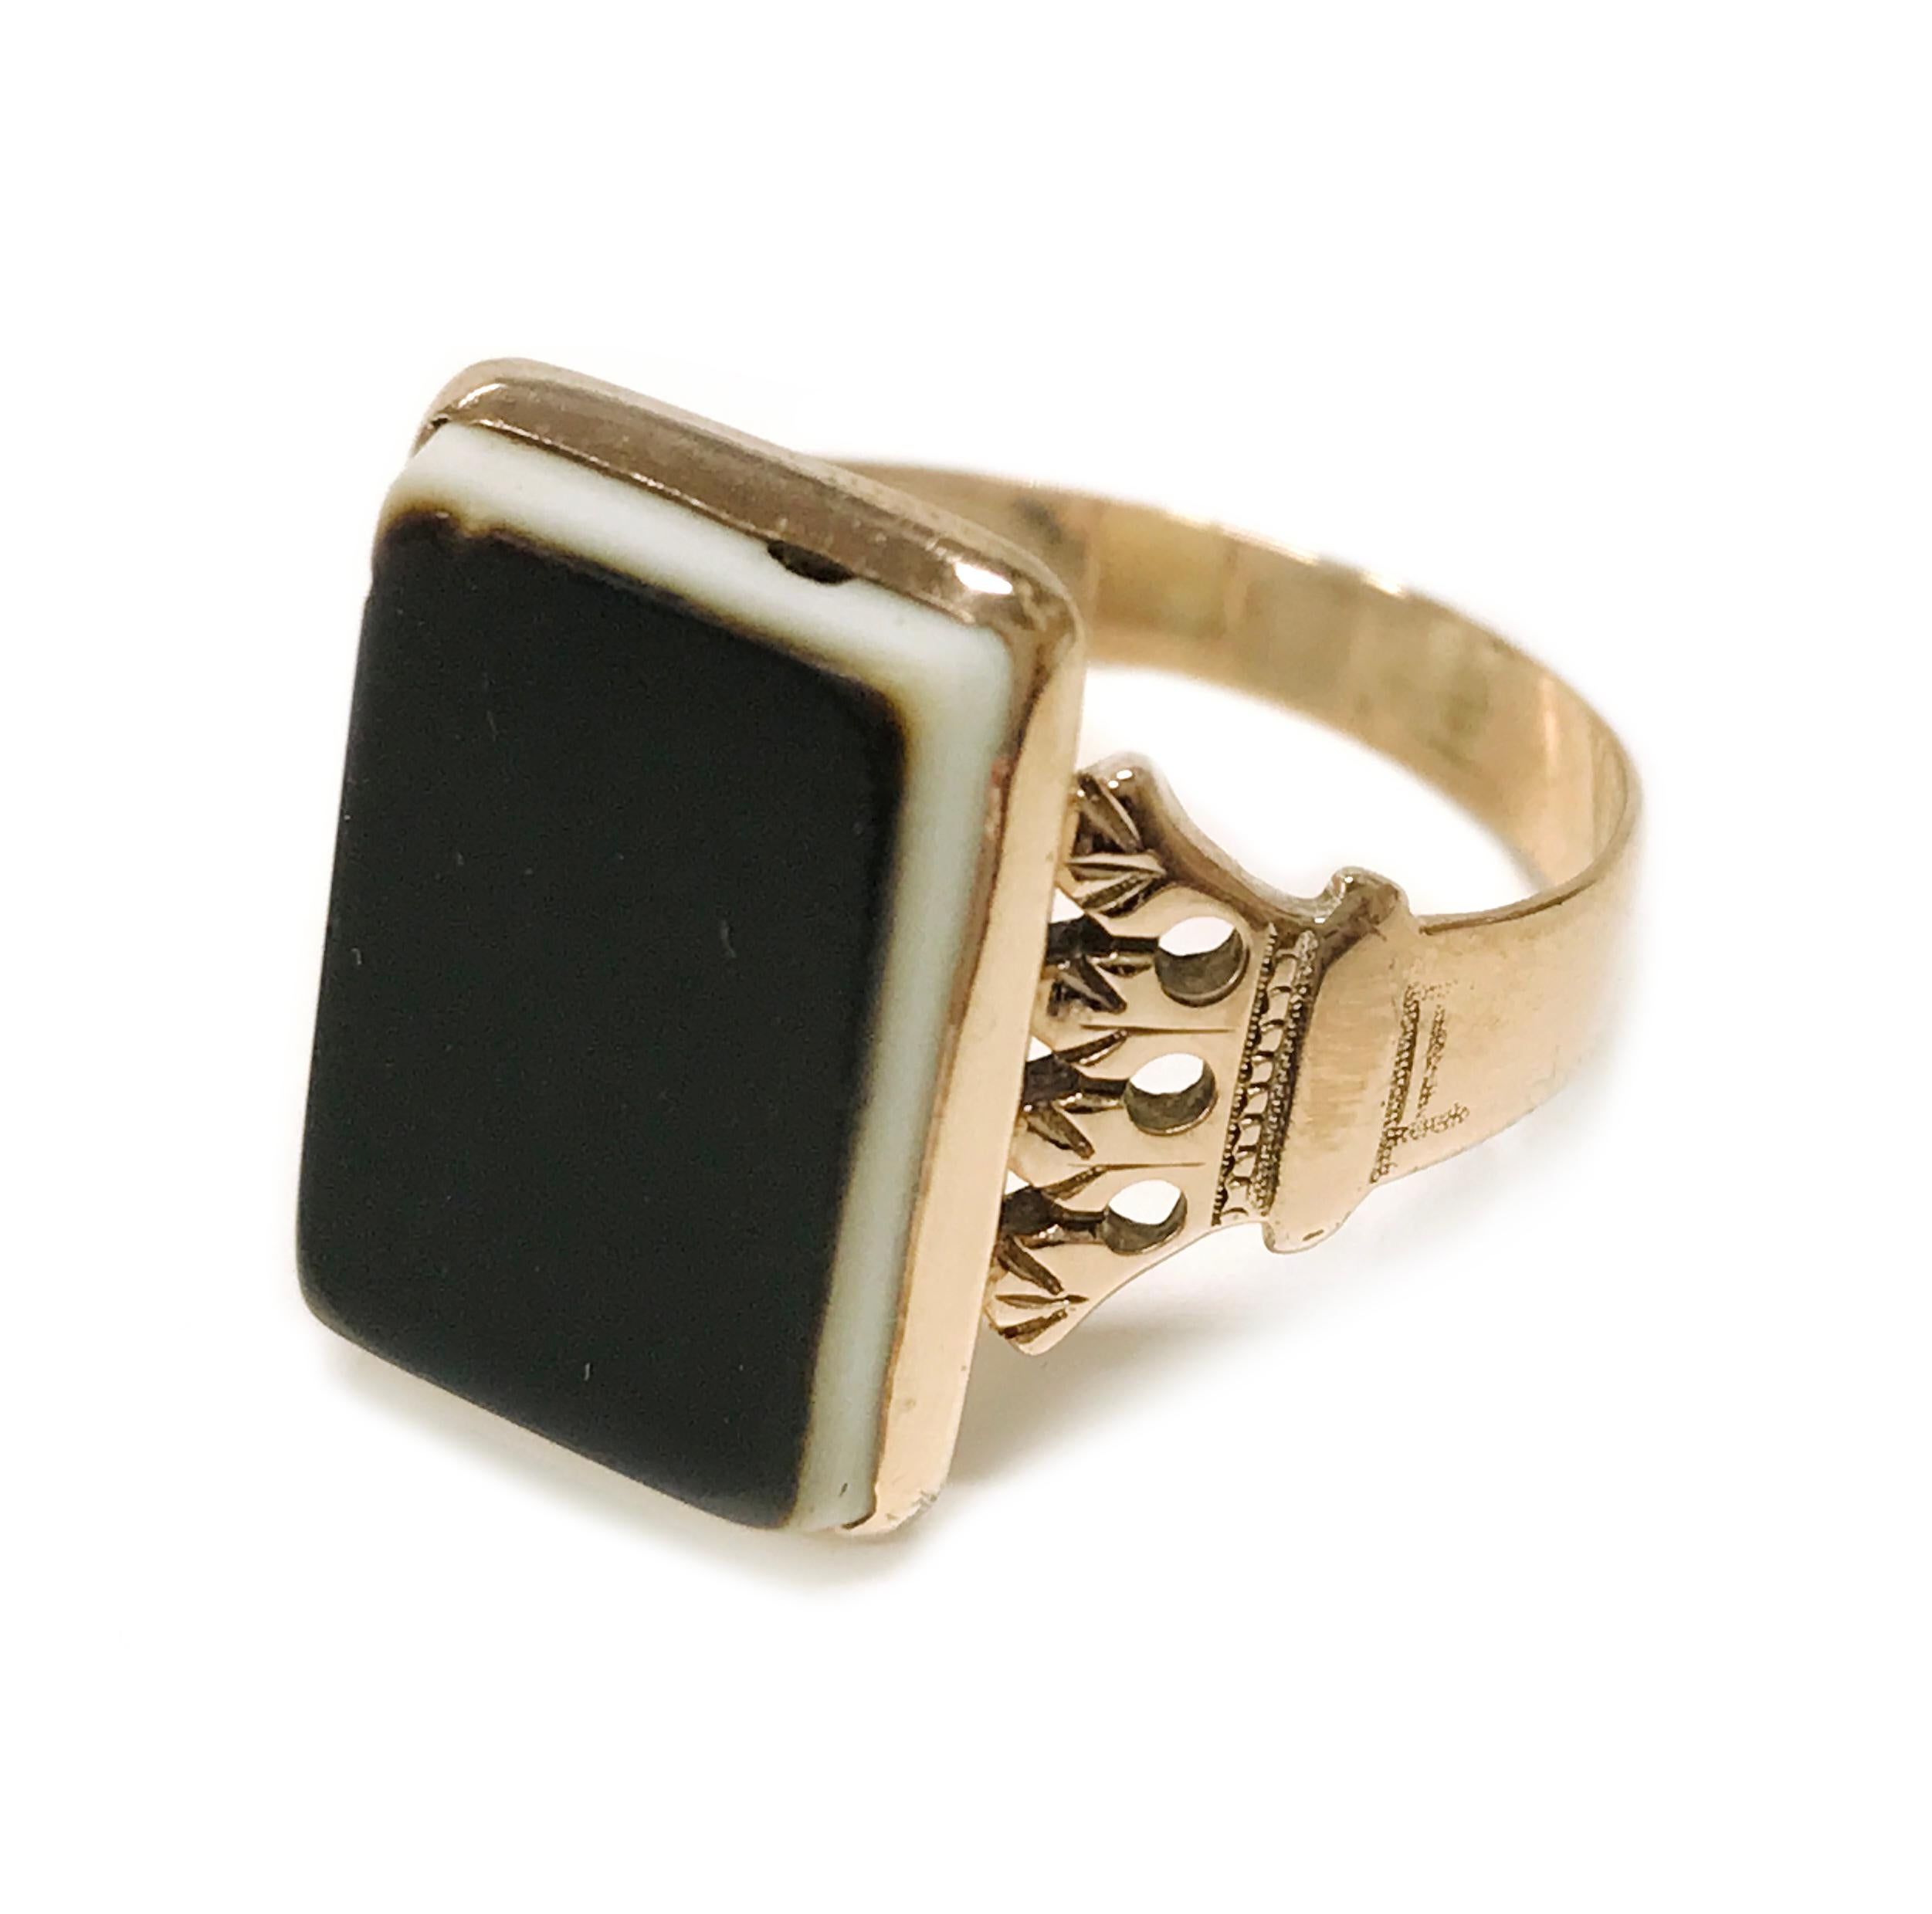 10 Karat Art Deco Sardonyx Ring, ca. 1940er Jahre. Der rechteckige Stein misst 15 mm x 10 mm. Das Band hat ein Art-Déco-Motiv mit Maserung. Die Oberseite des Steins weist Gebrauchsspuren und Kratzer auf. Die Ringgröße ist 9 1/4. Das